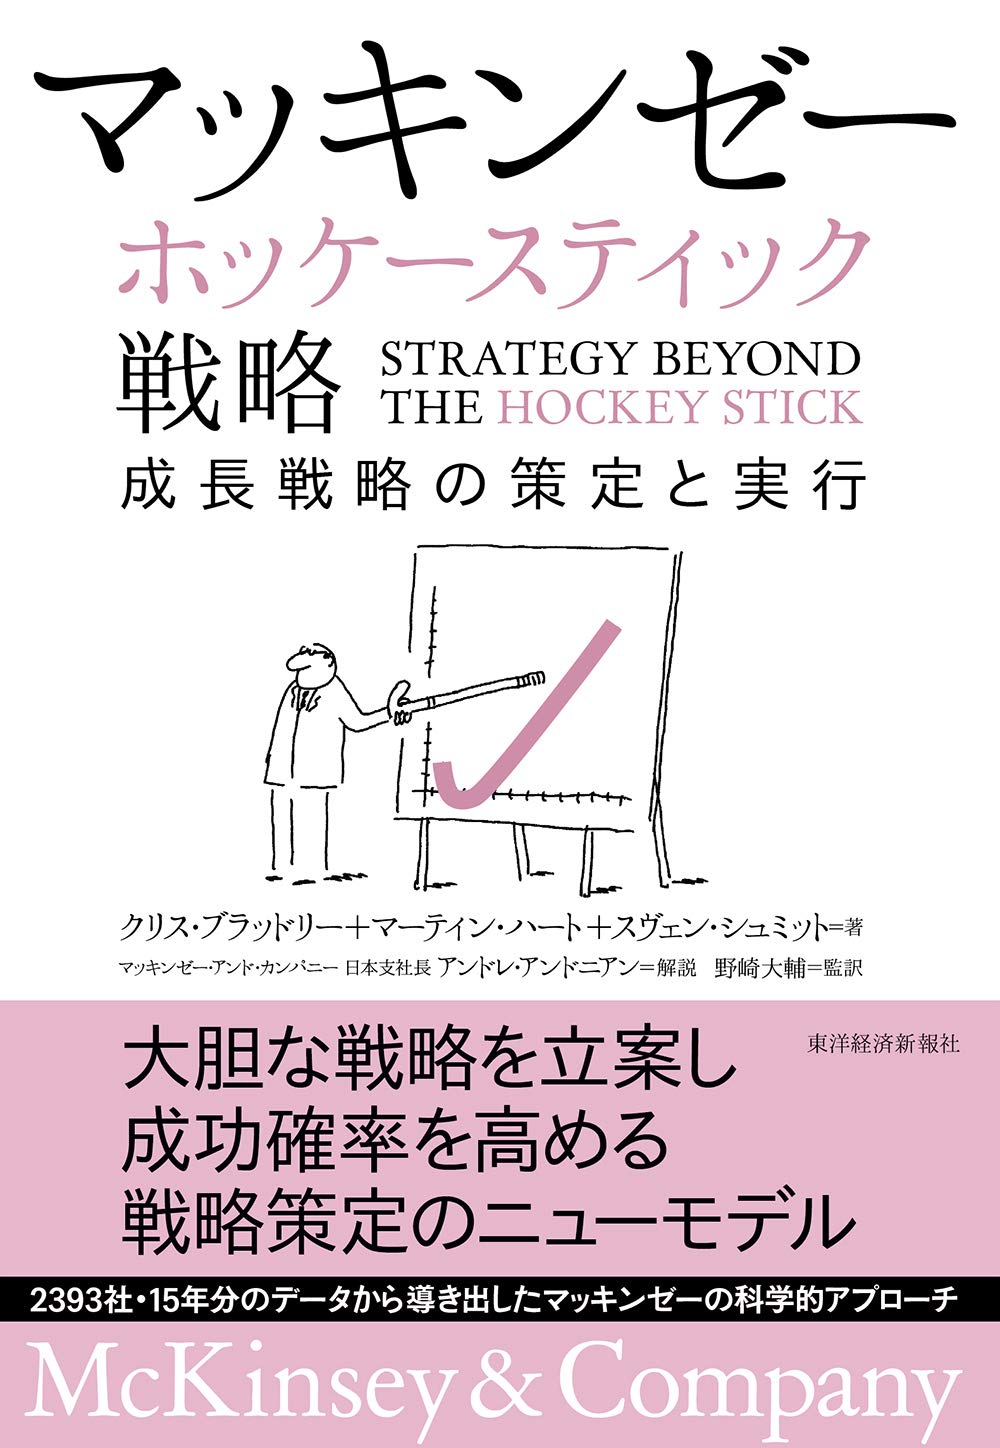 マッキンゼー ホッケースティック戦略: 成長戦略の策定と実行 単行本 – 2019/10/25